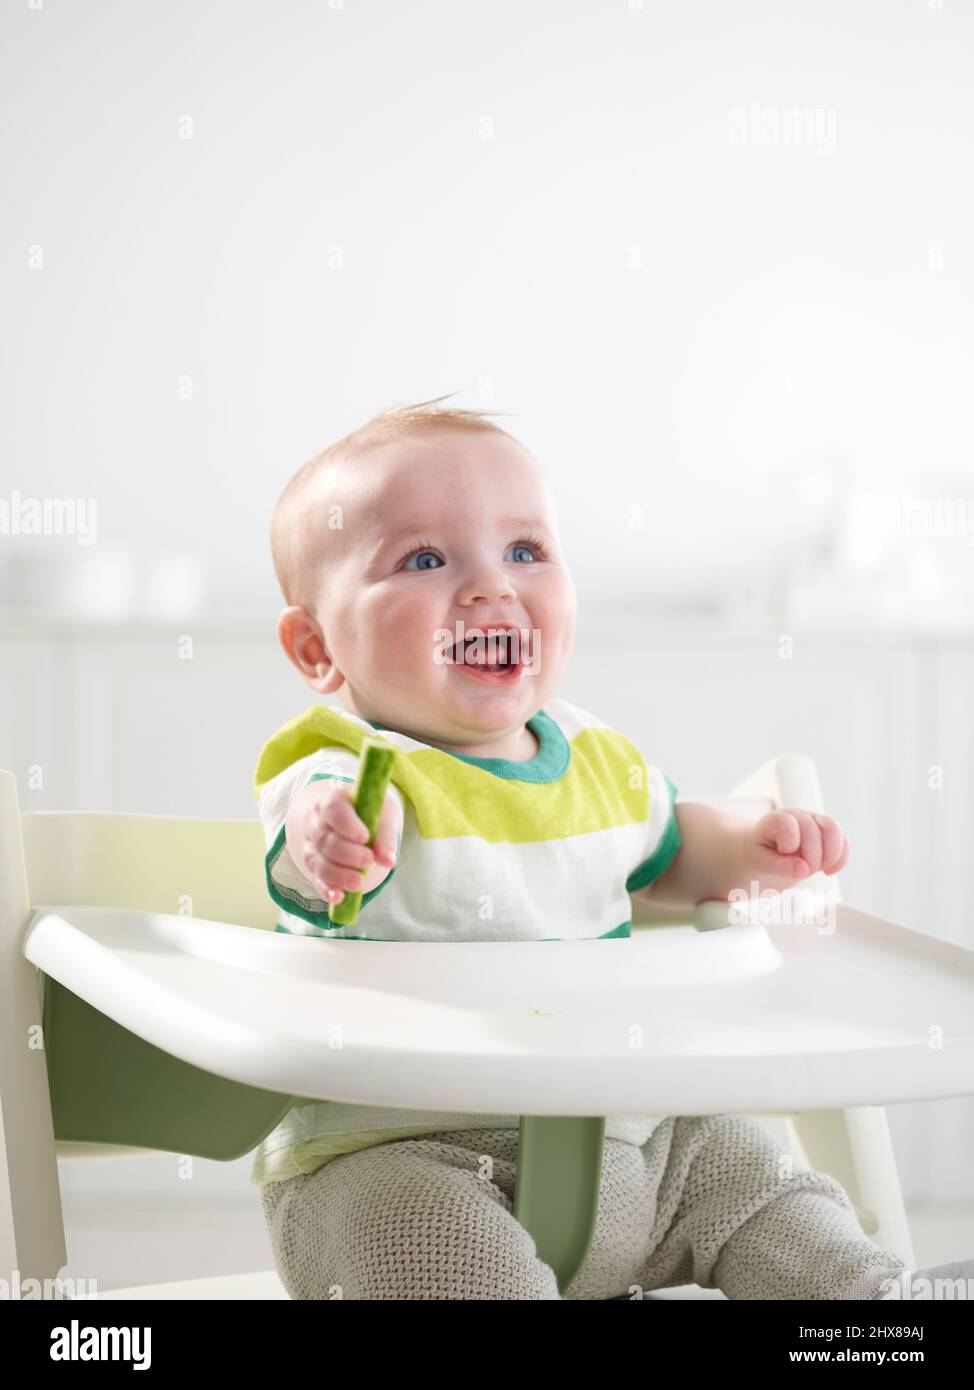 Bébé de 6 mois en train de manger en chaise haute Banque D'Images